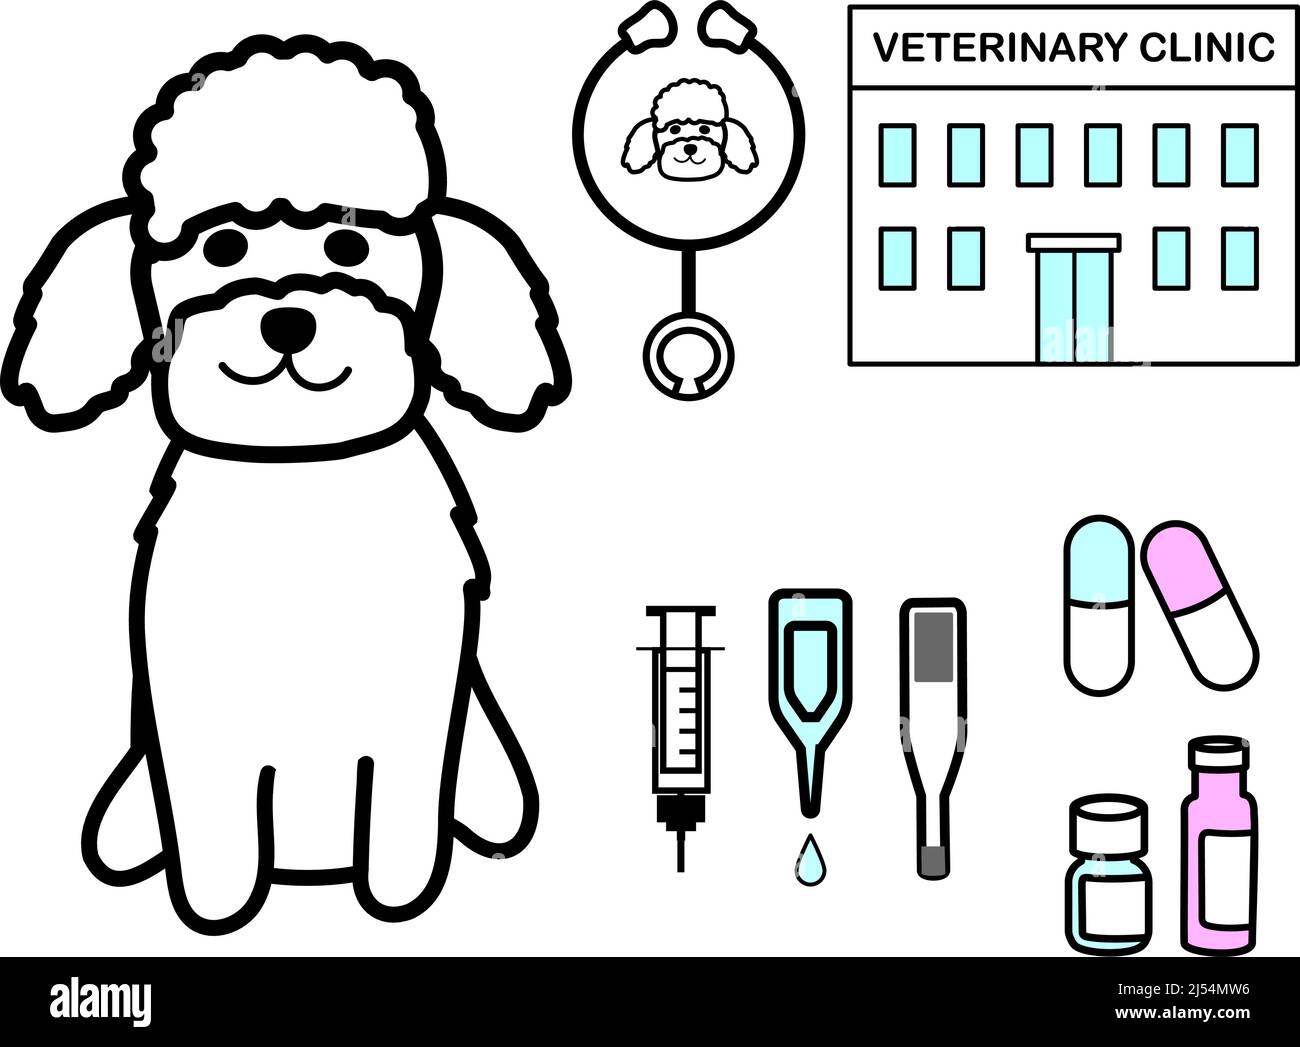 Una barbetta giocattolo con set di icone: Siringa, gocce, termometro, medicinali, stetoscopio, e clinica veterinaria Foto Stock